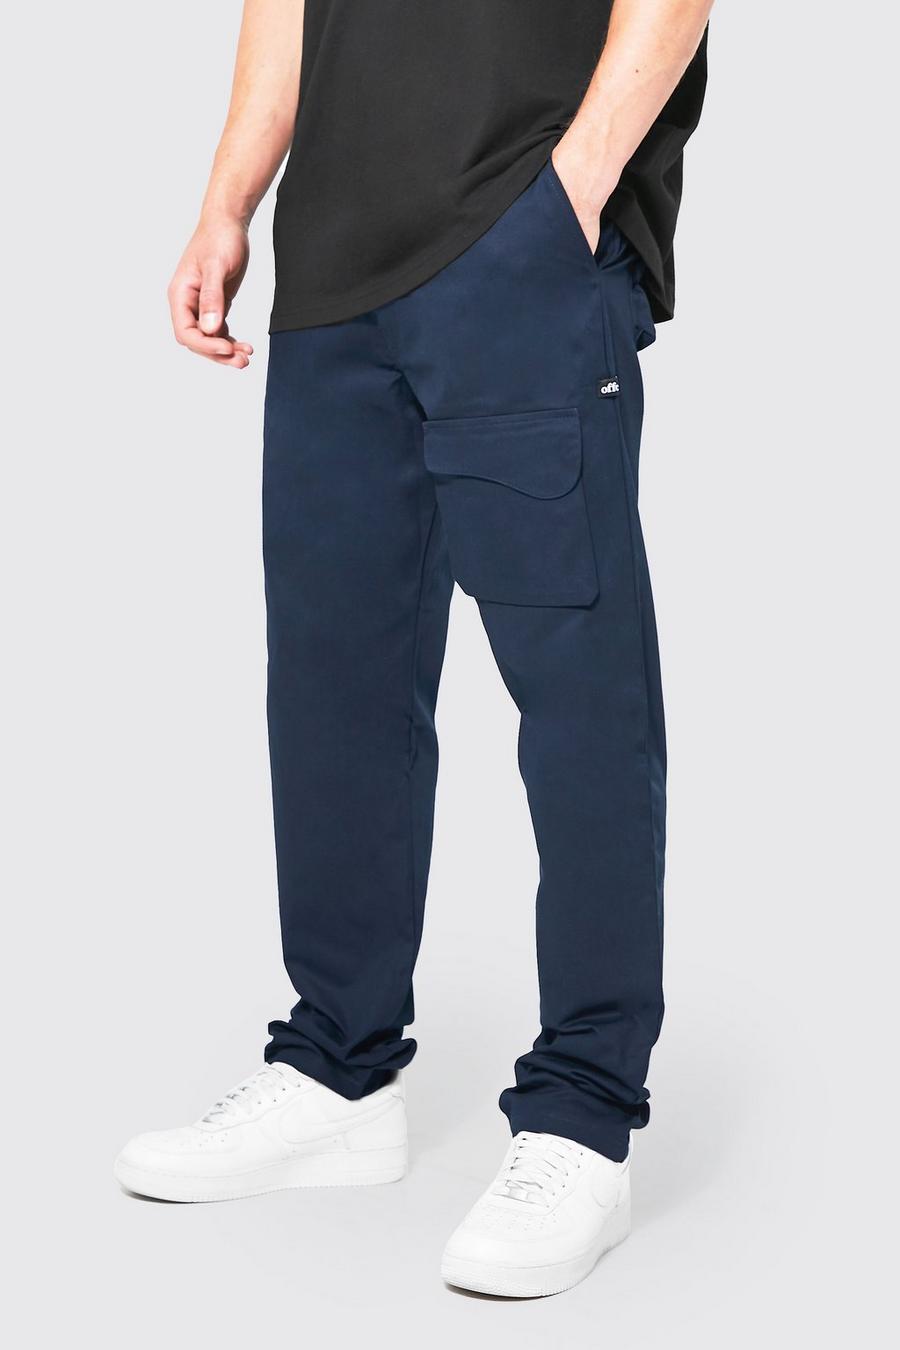 Tall lockere Hose mit Taschen, Navy marine